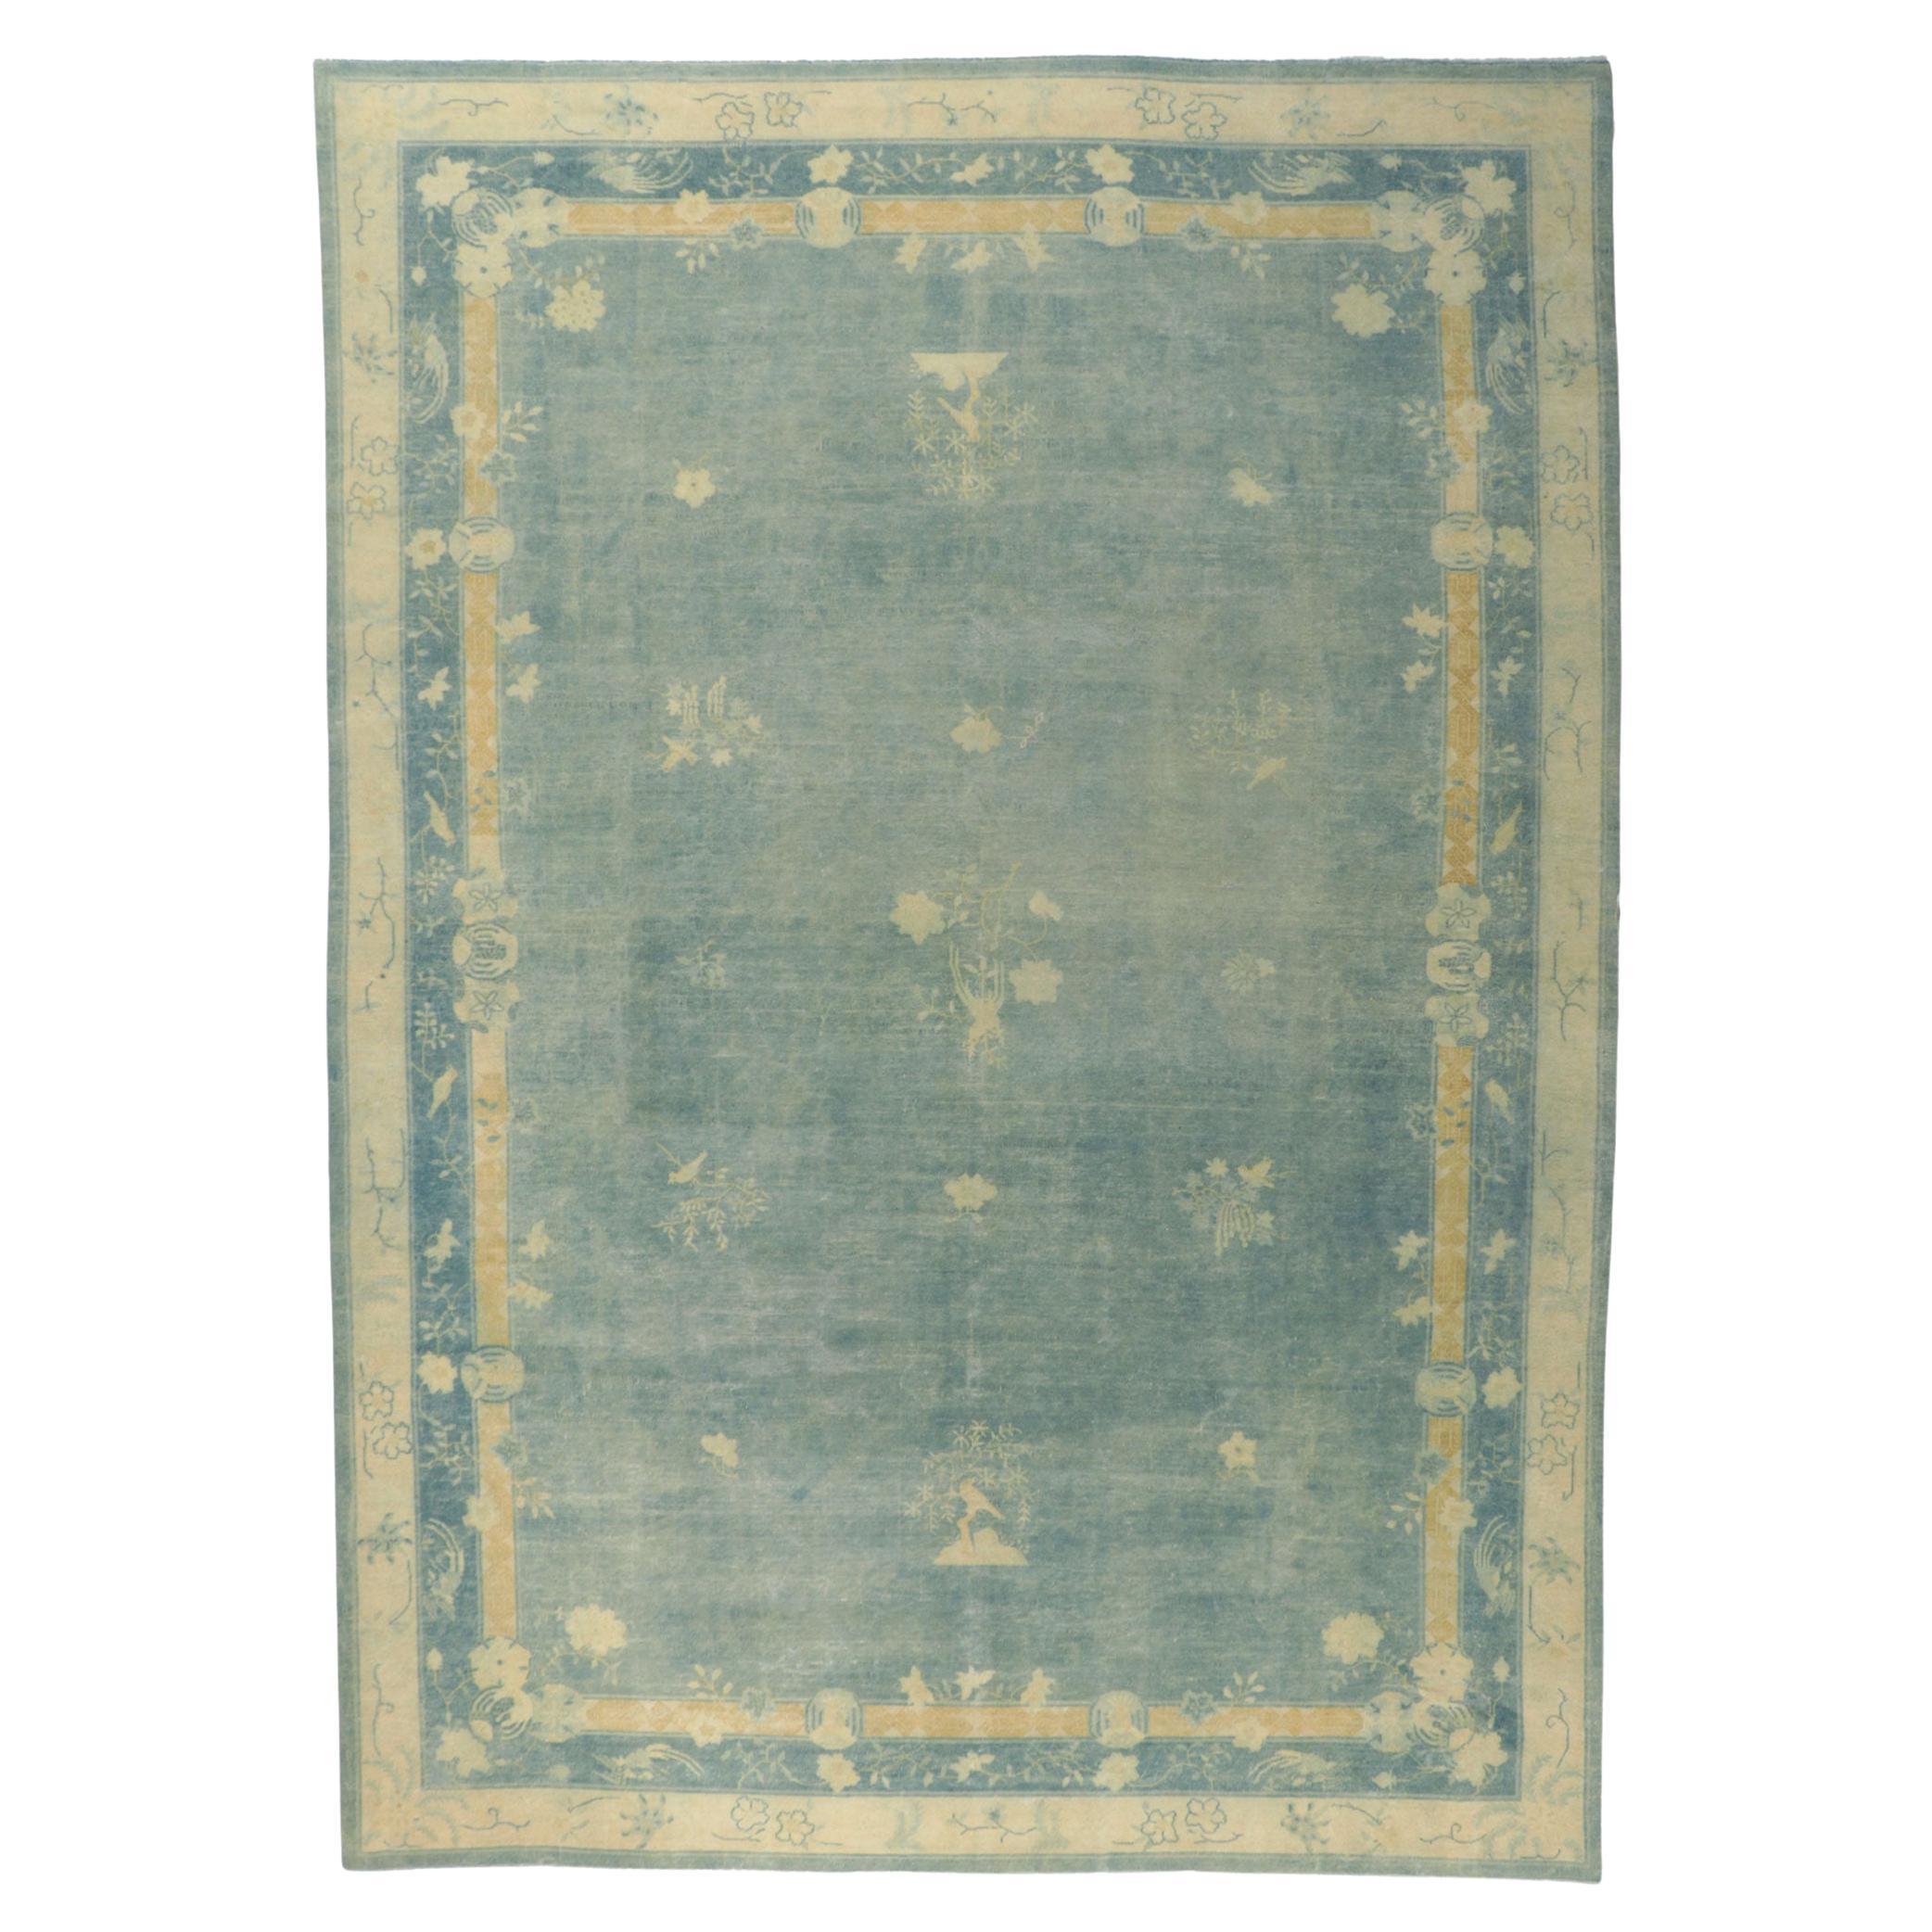 Antiker chinesischer Peking-Teppich aus den 1880er Jahren, Chinoiserie-Chic trifft auf stille Raffinesse